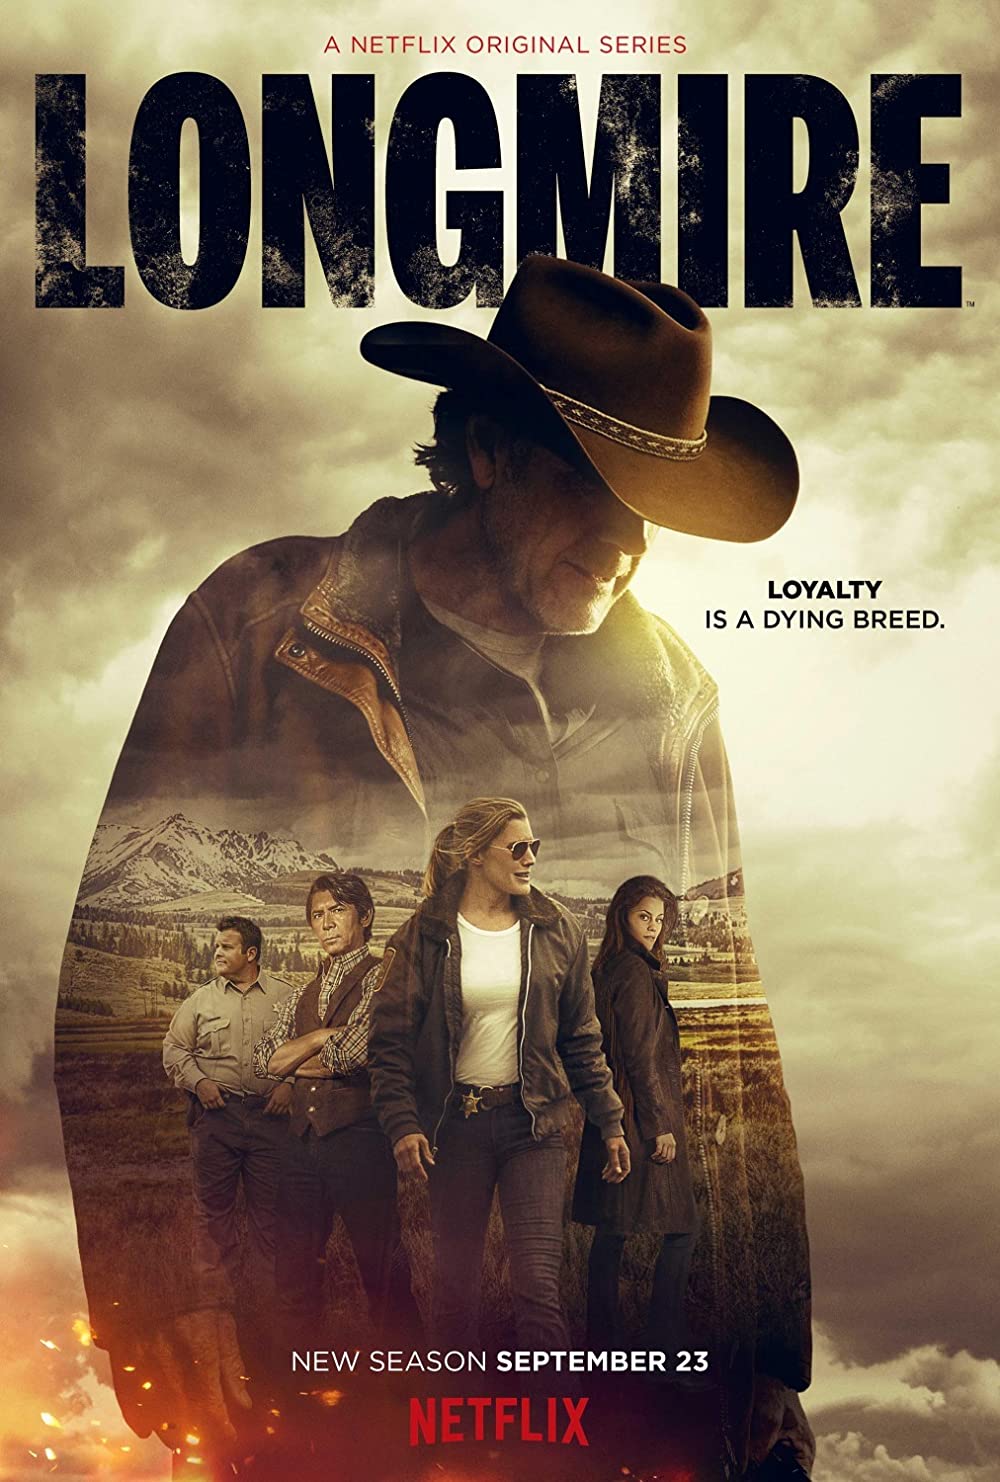 Longmire poster